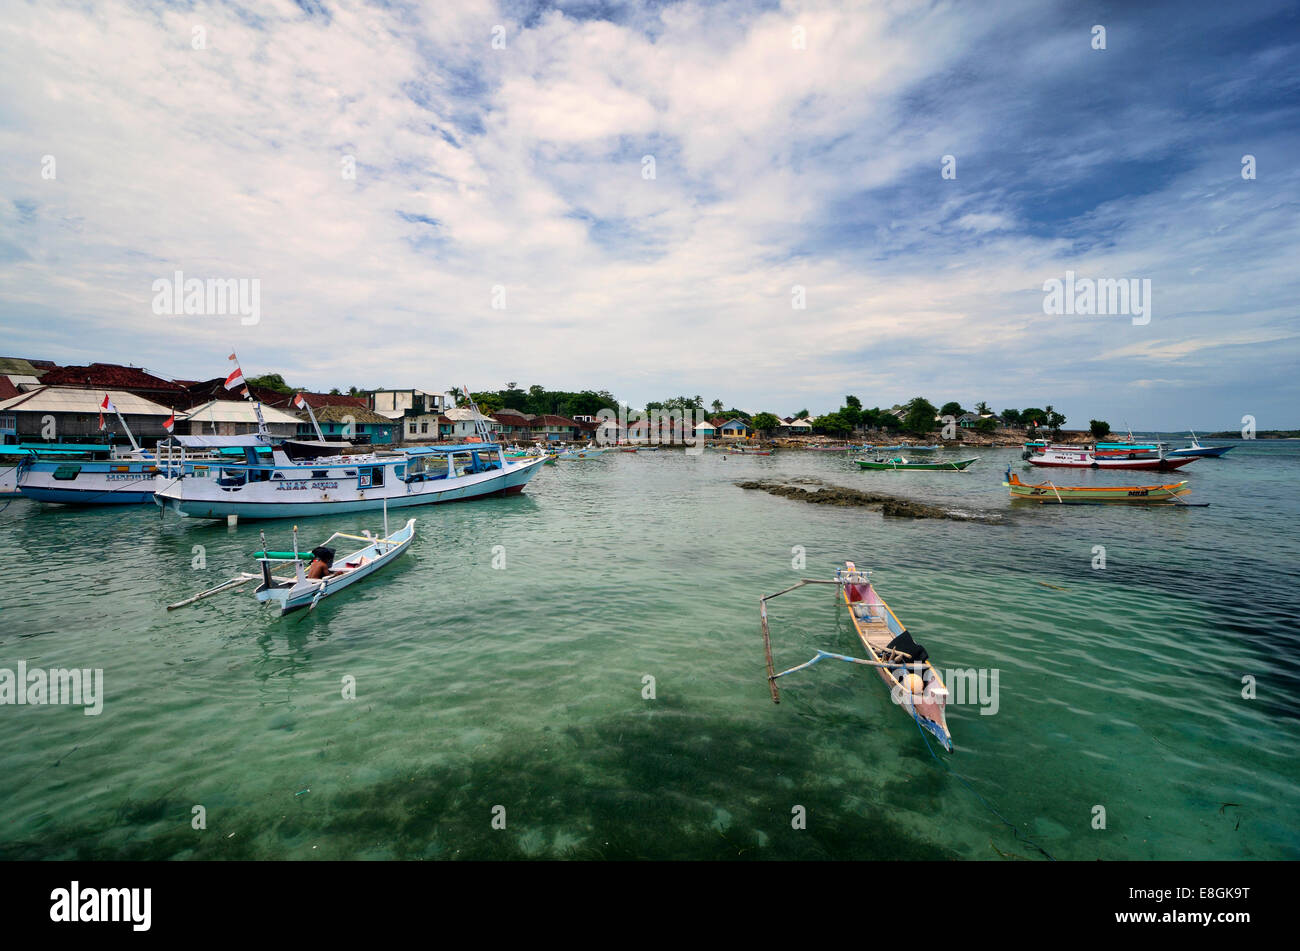 Indonesia, West Nusa Tenggara, Maringkik, Fisherman Village Stock Photo